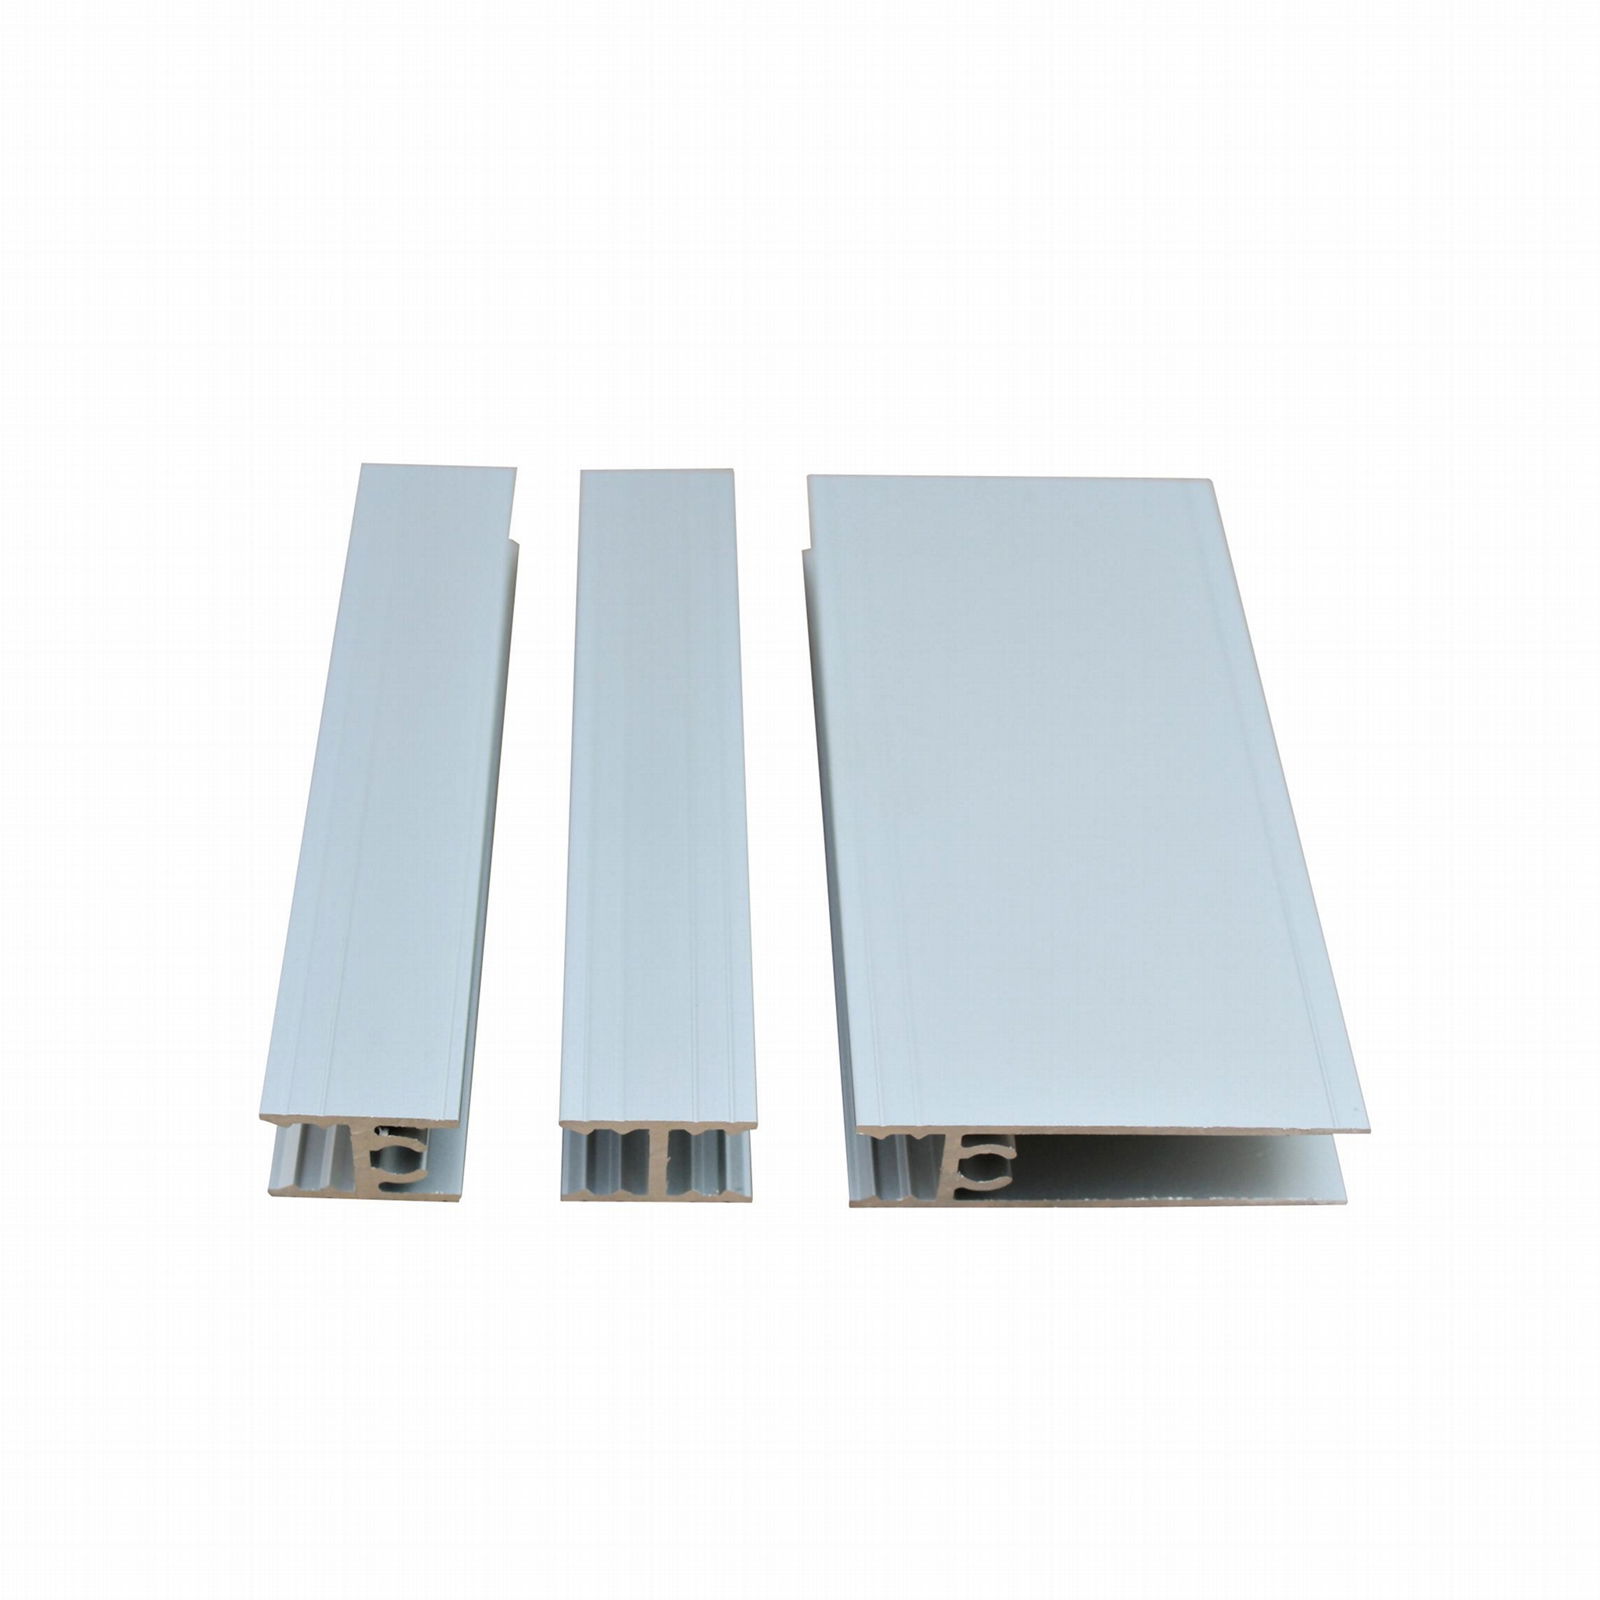 European closet sliding door aluminium profile system 2